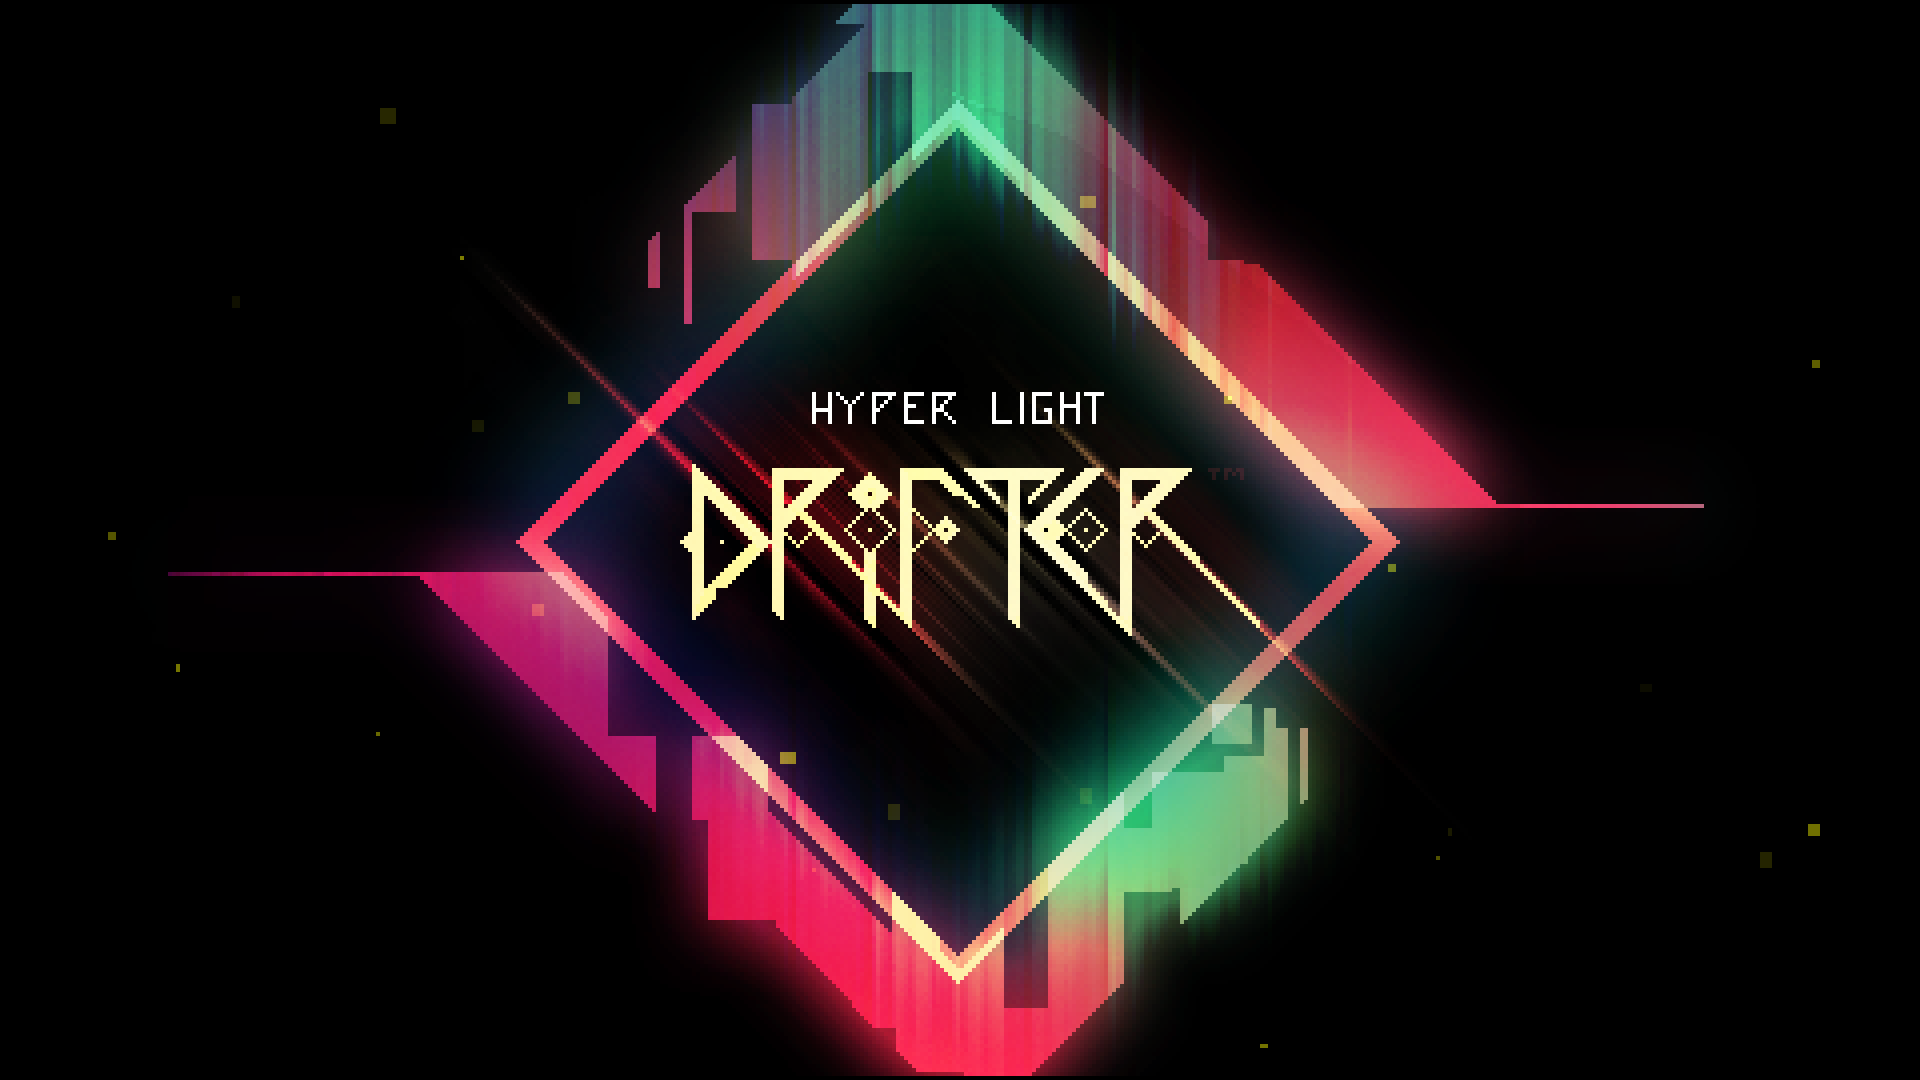 hyper light breaker release date